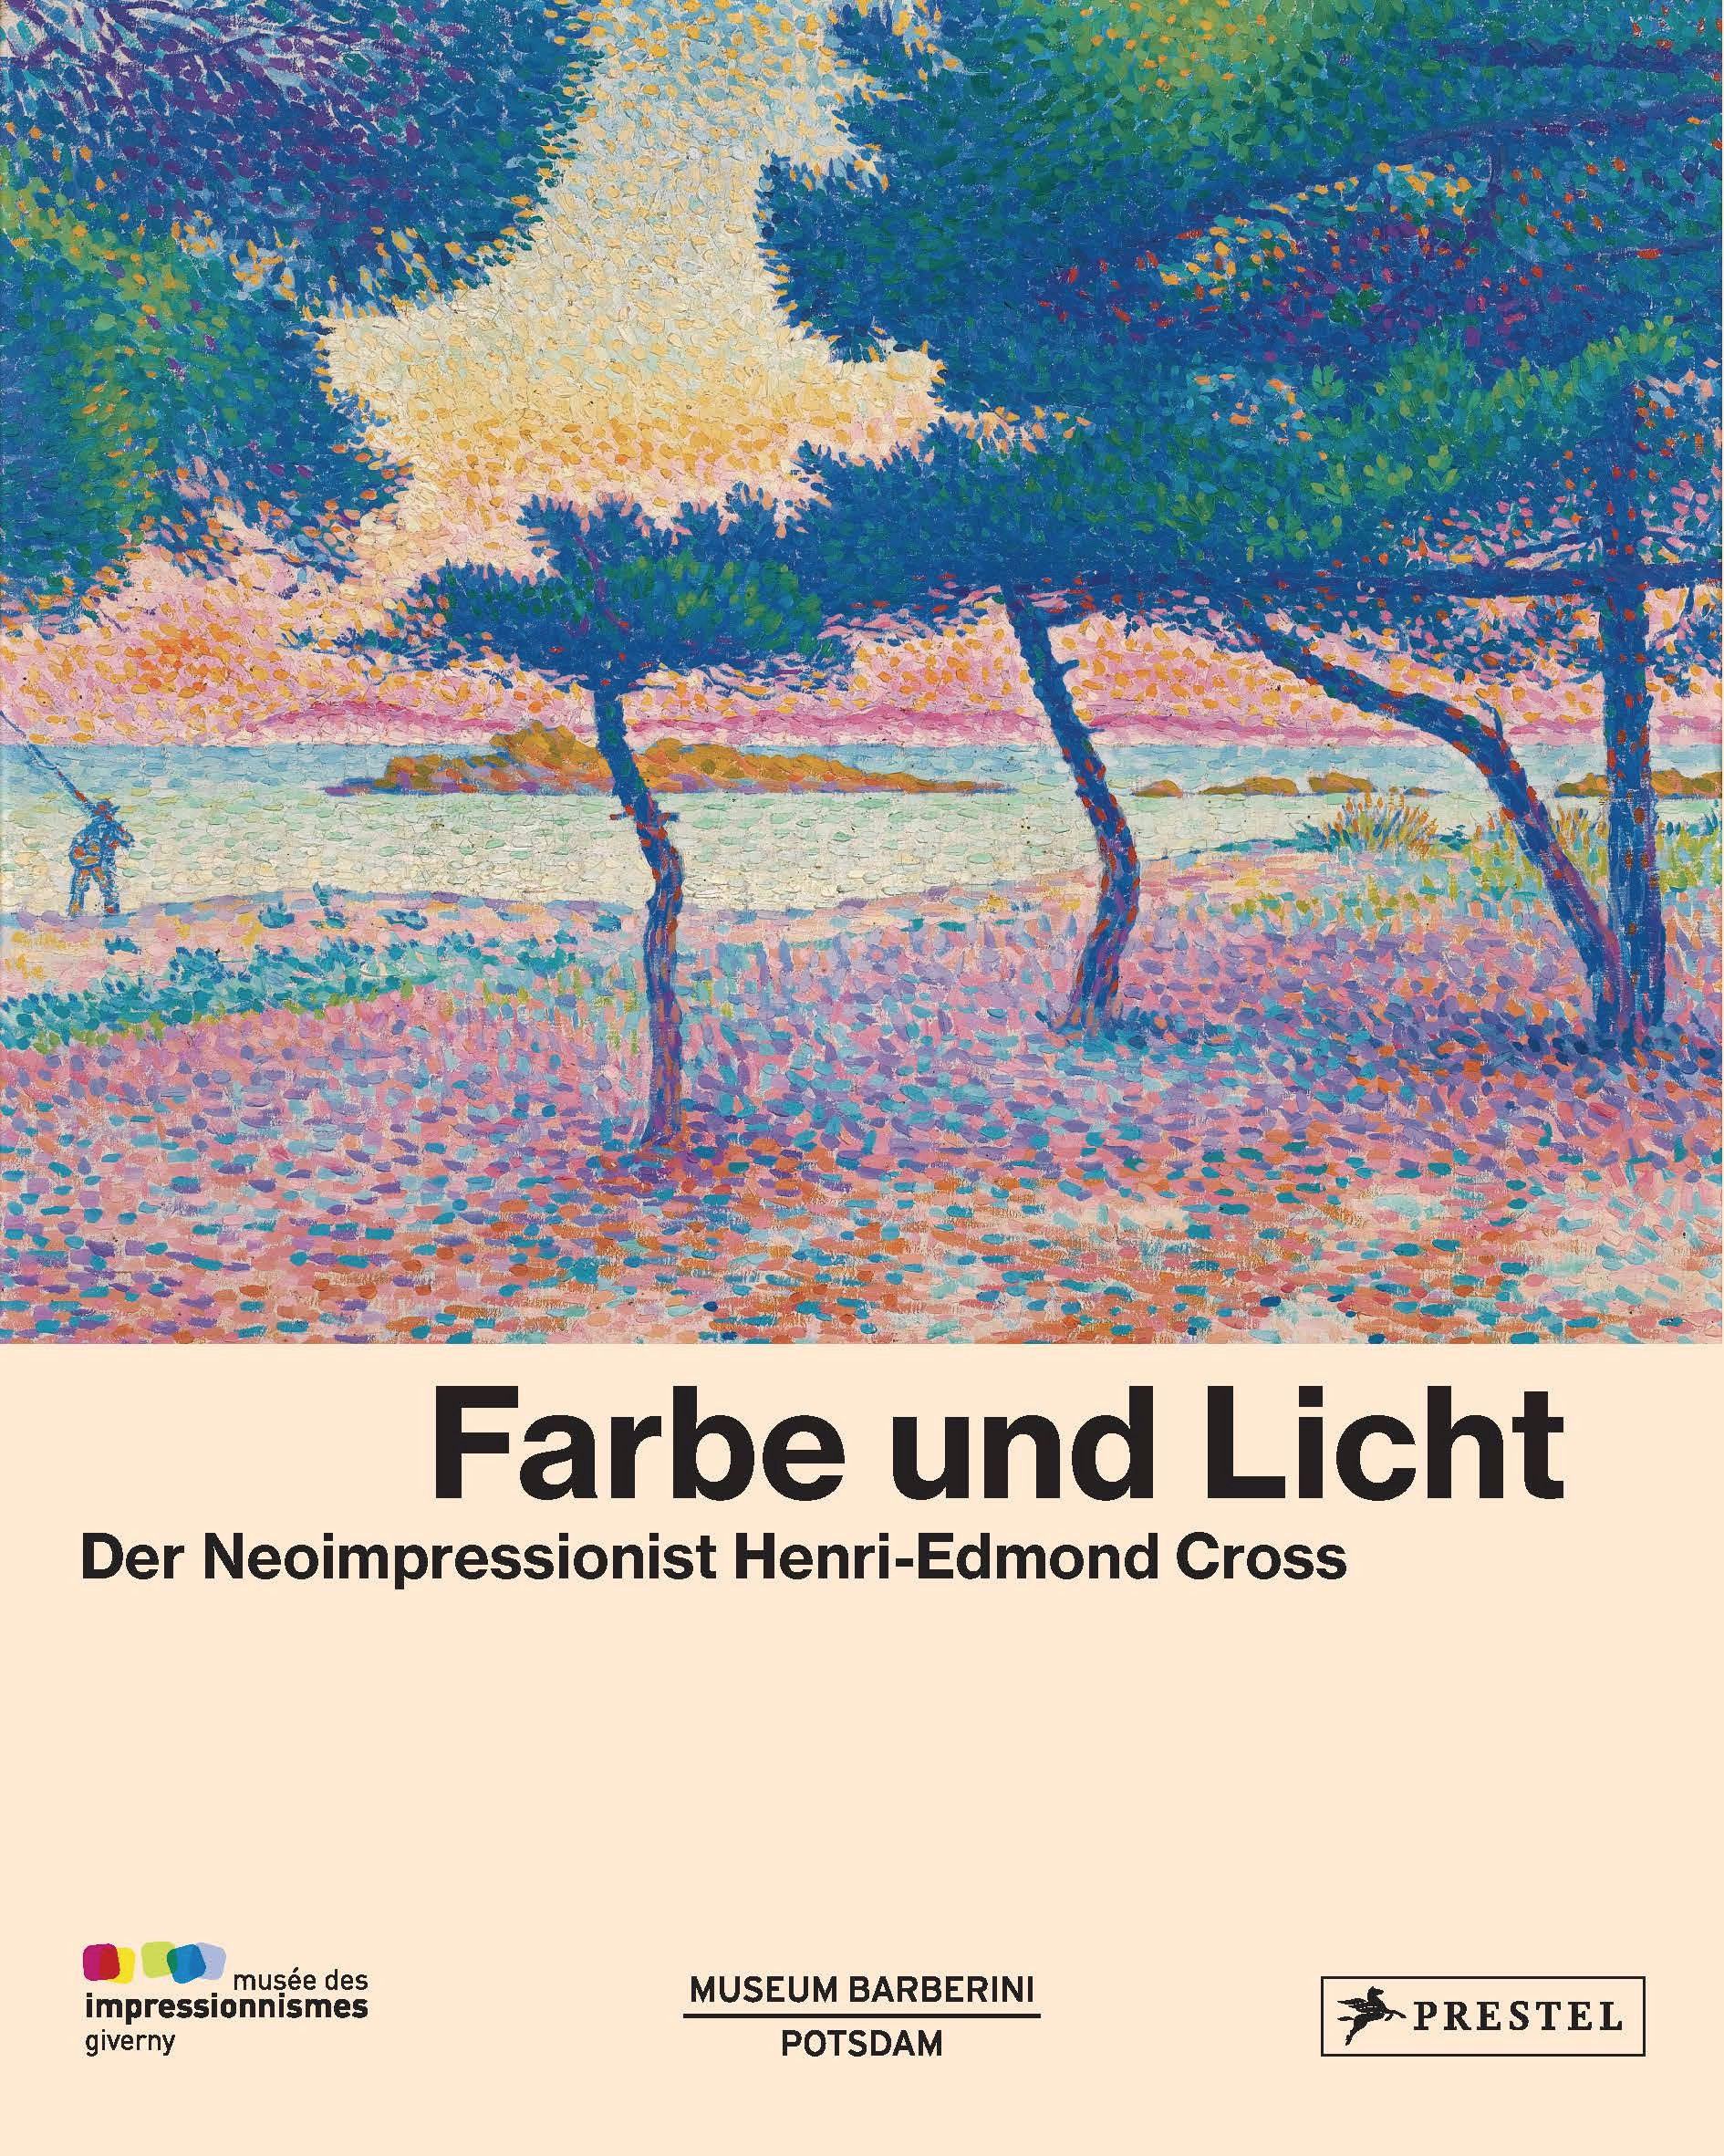 Farbe und Licht | Der Neoimpressionist Henri-Edmond Cross